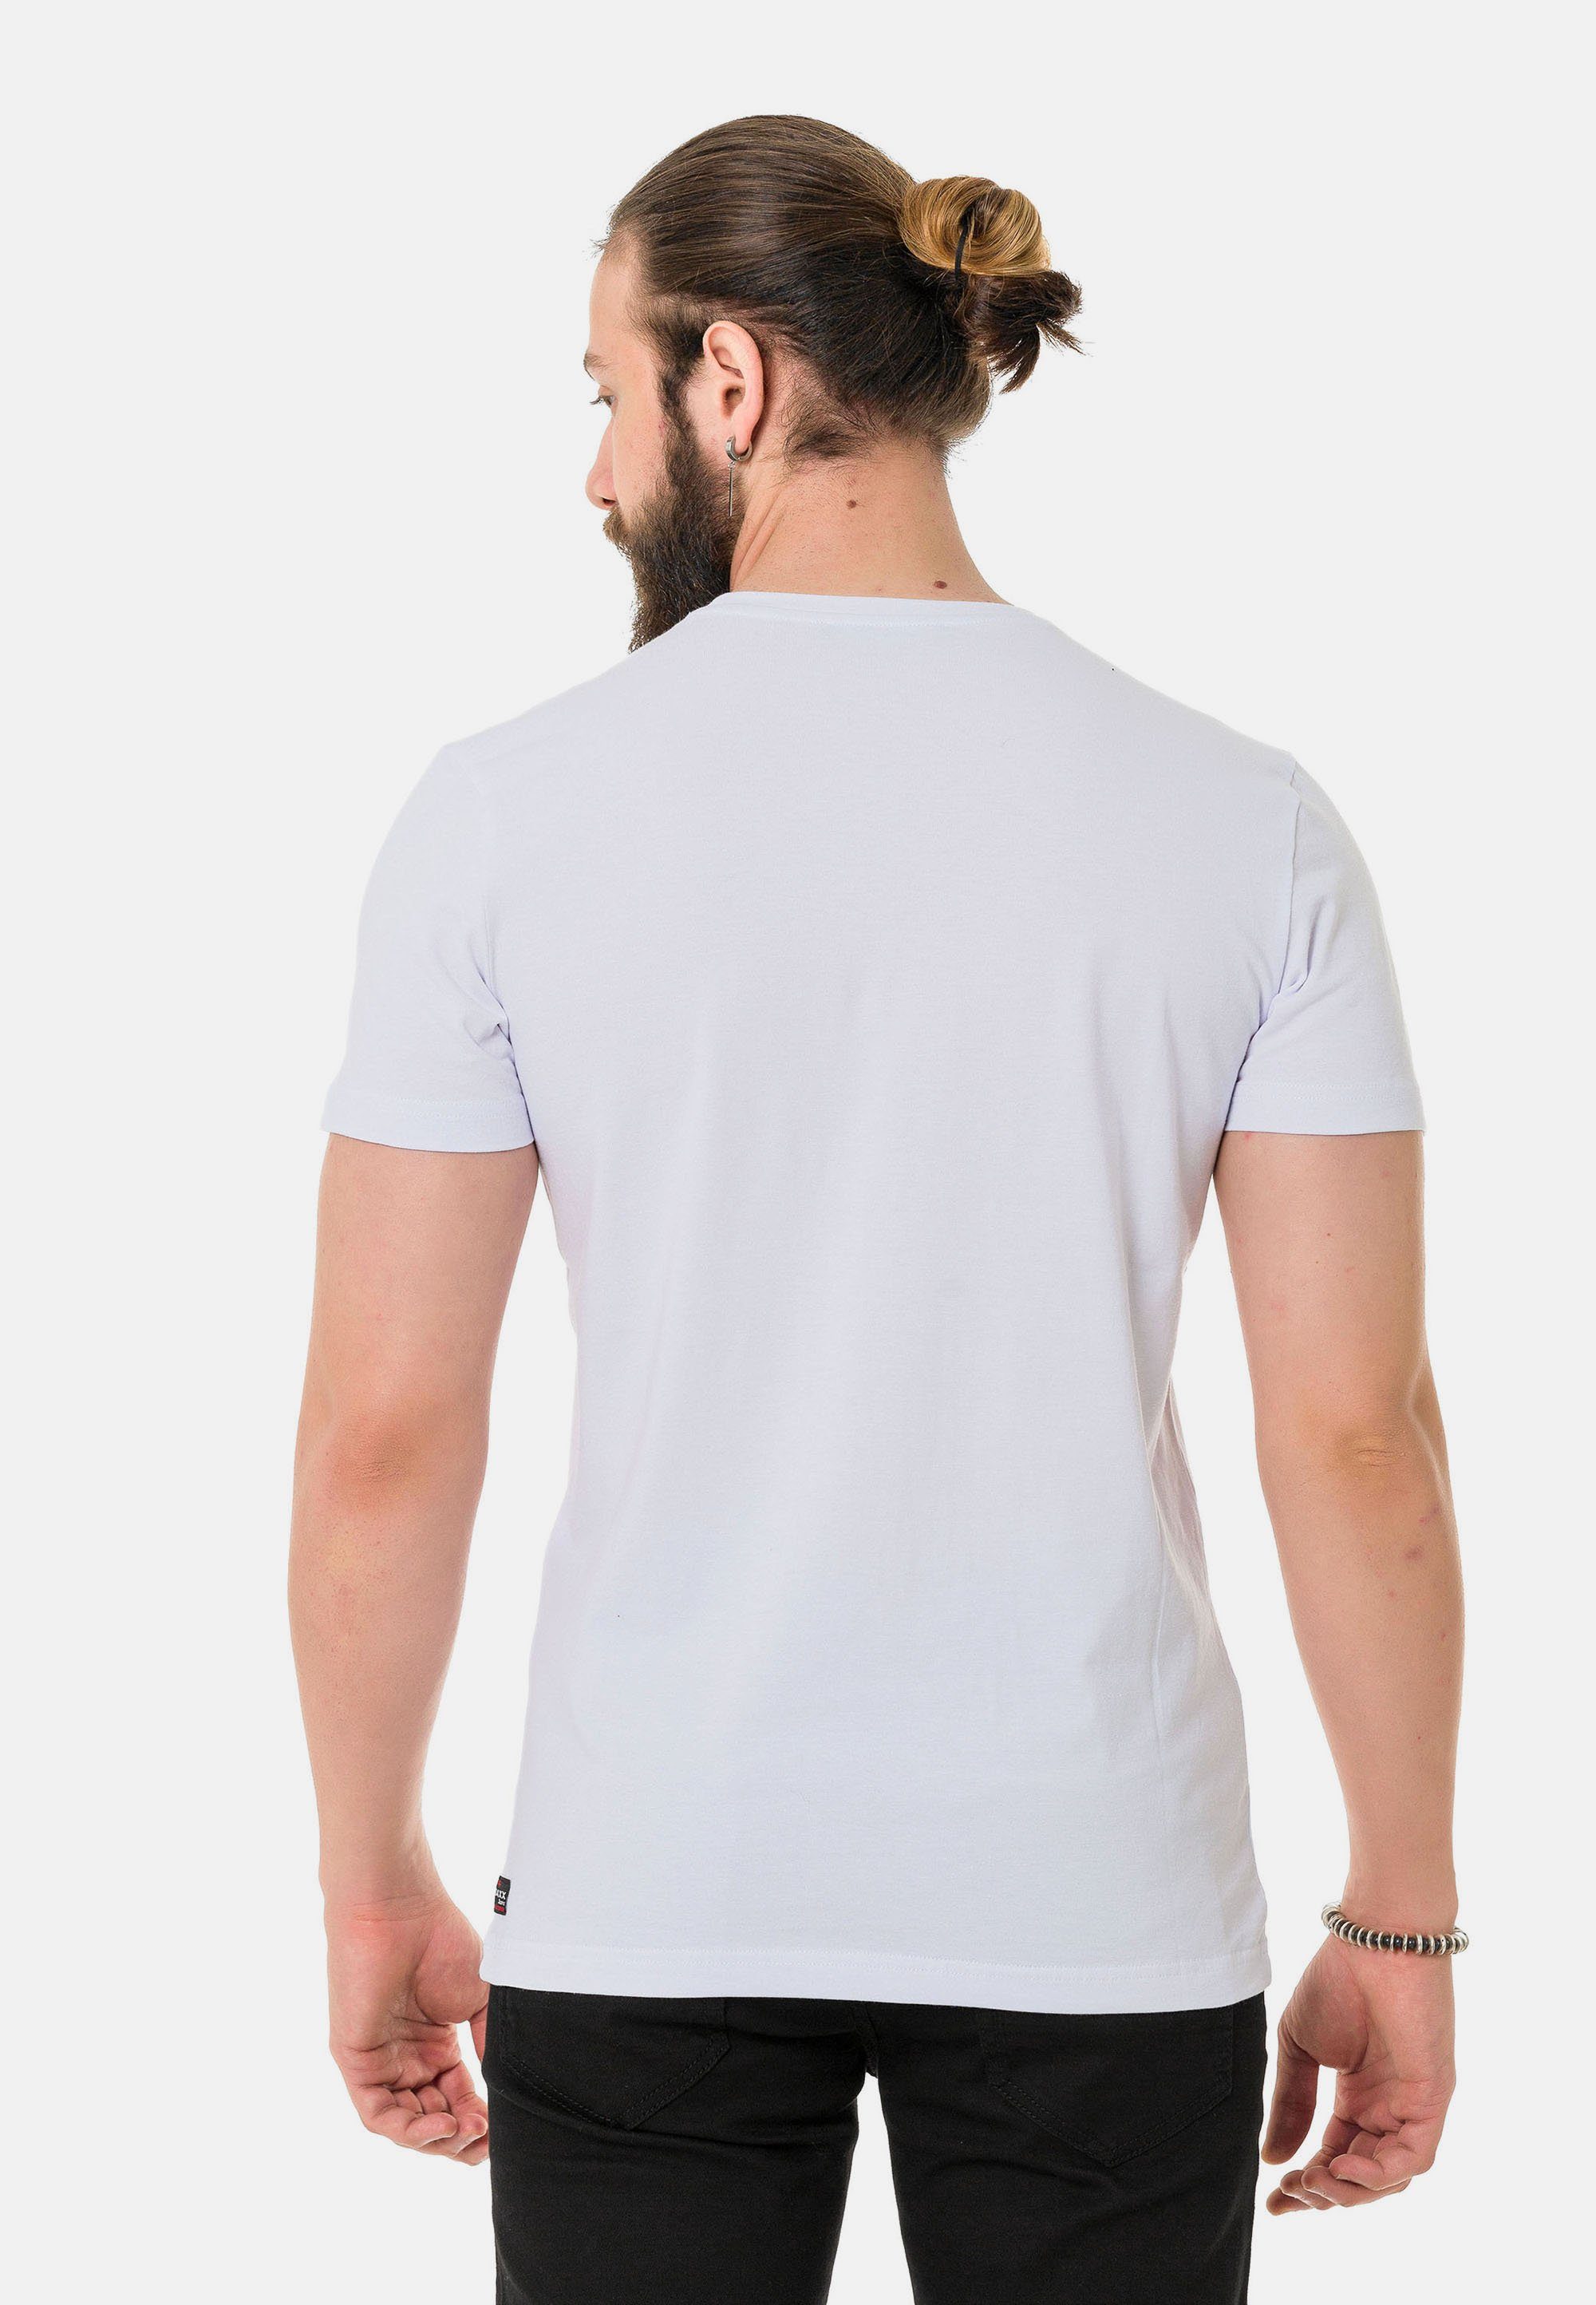 Cipo & Baxx T-Shirt mit Work-Aufdruck weiß coolem